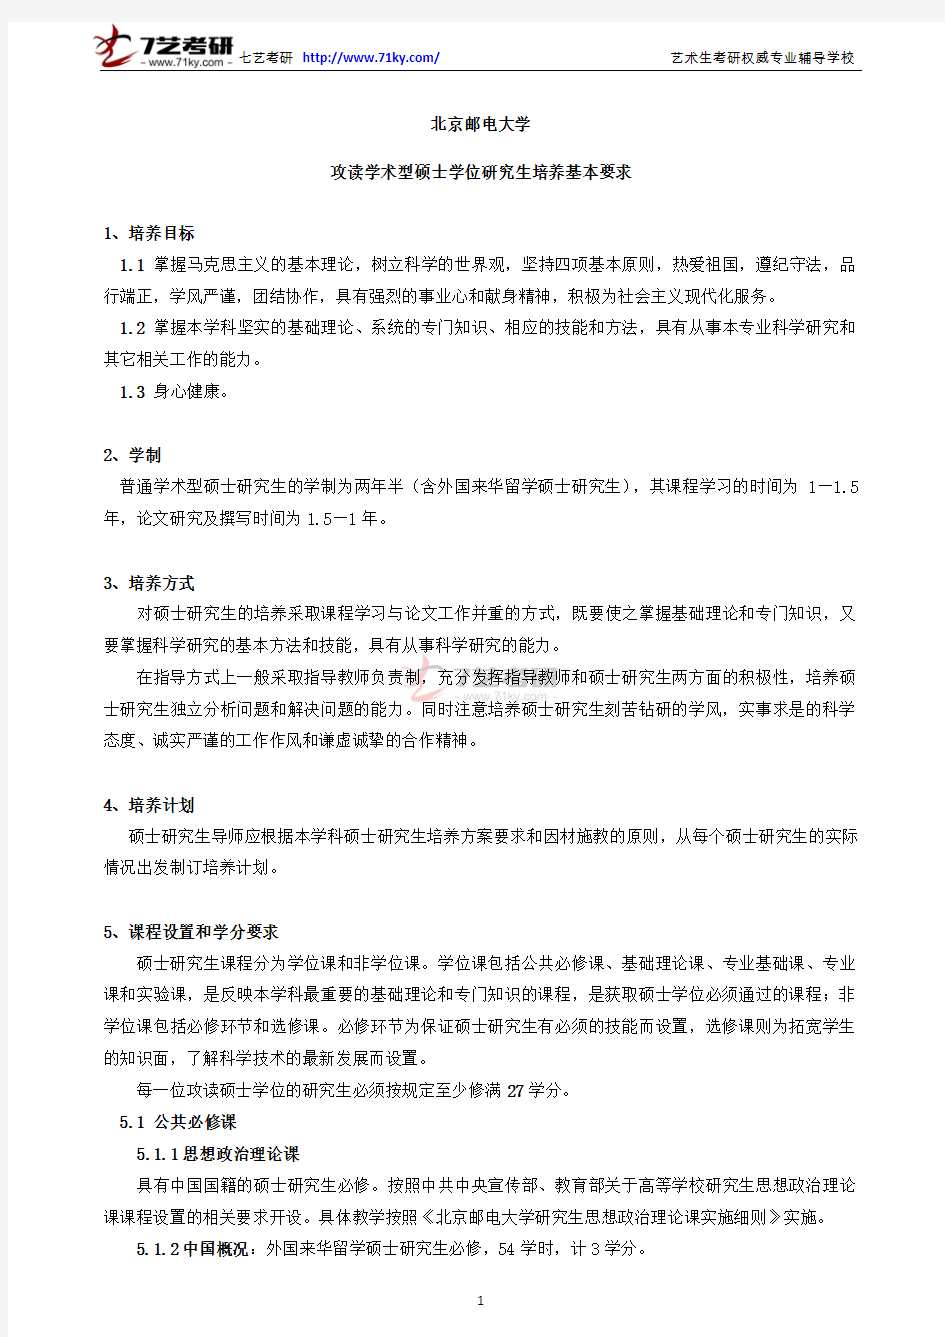 北京邮电大学攻读学术型硕士学位研究生培养基本要求(2013年版)